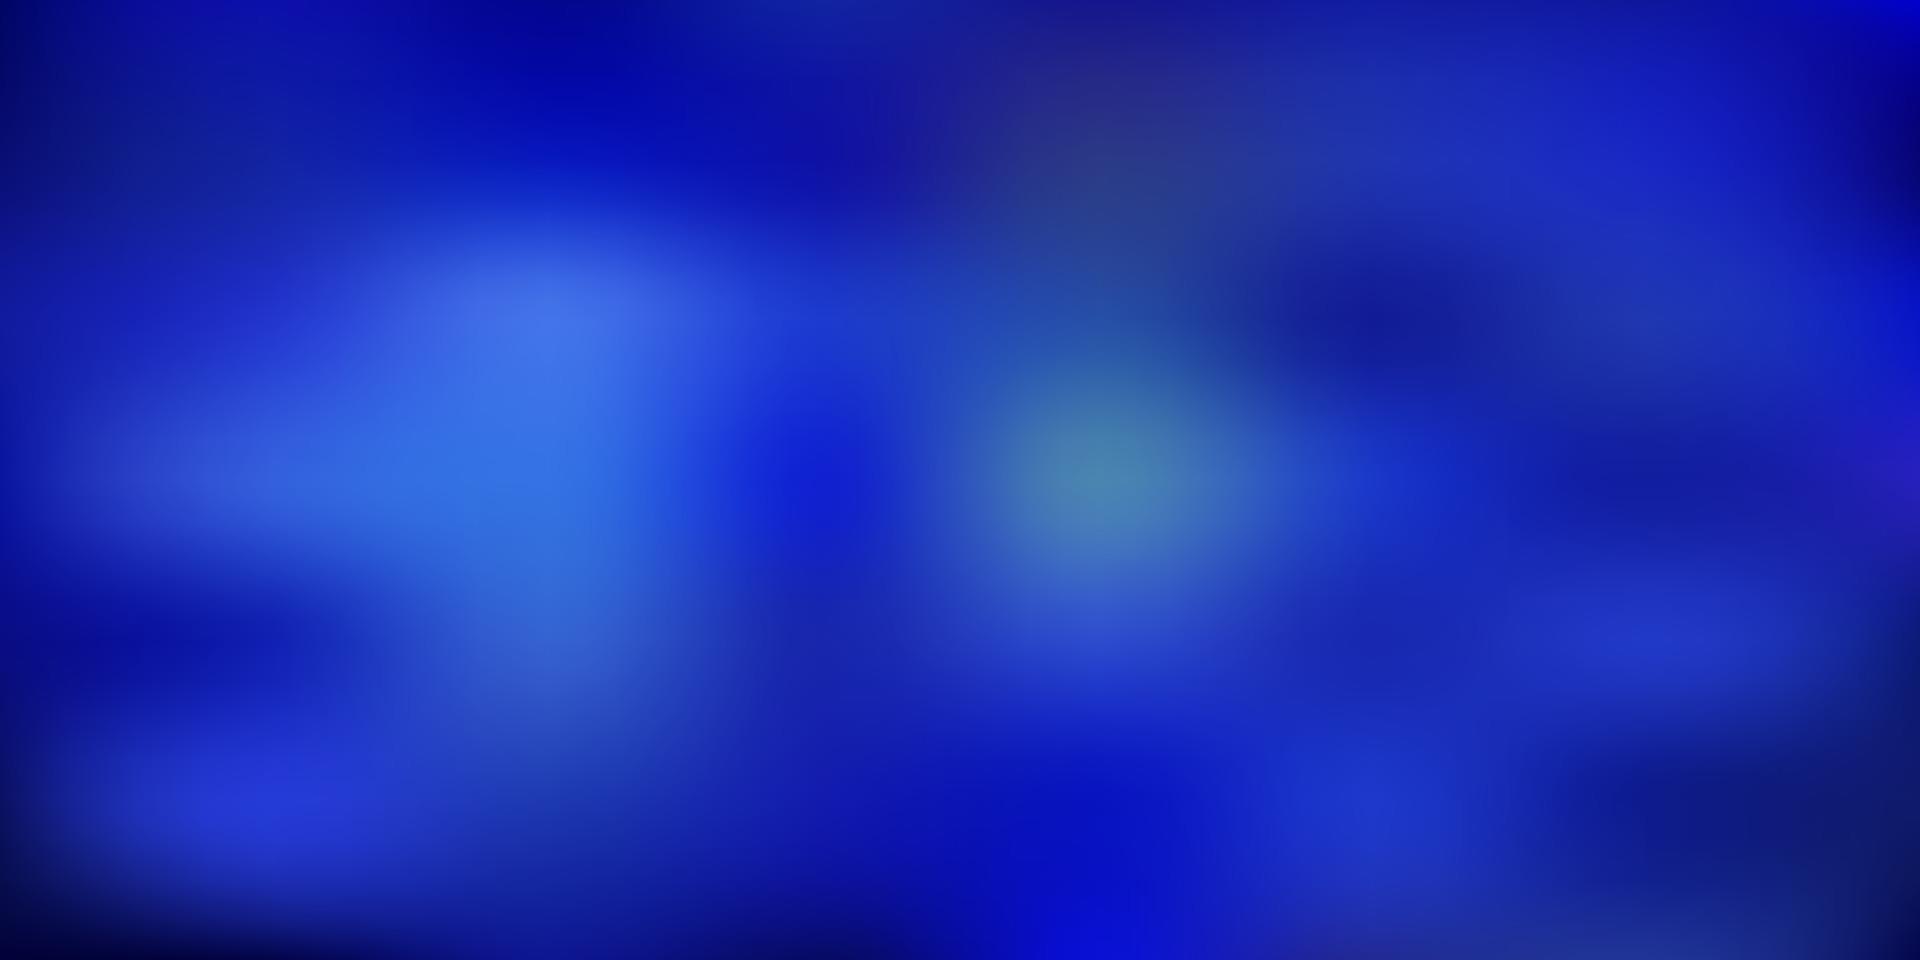 mörkrosa, blå vektor gradient oskärpa bakgrund.